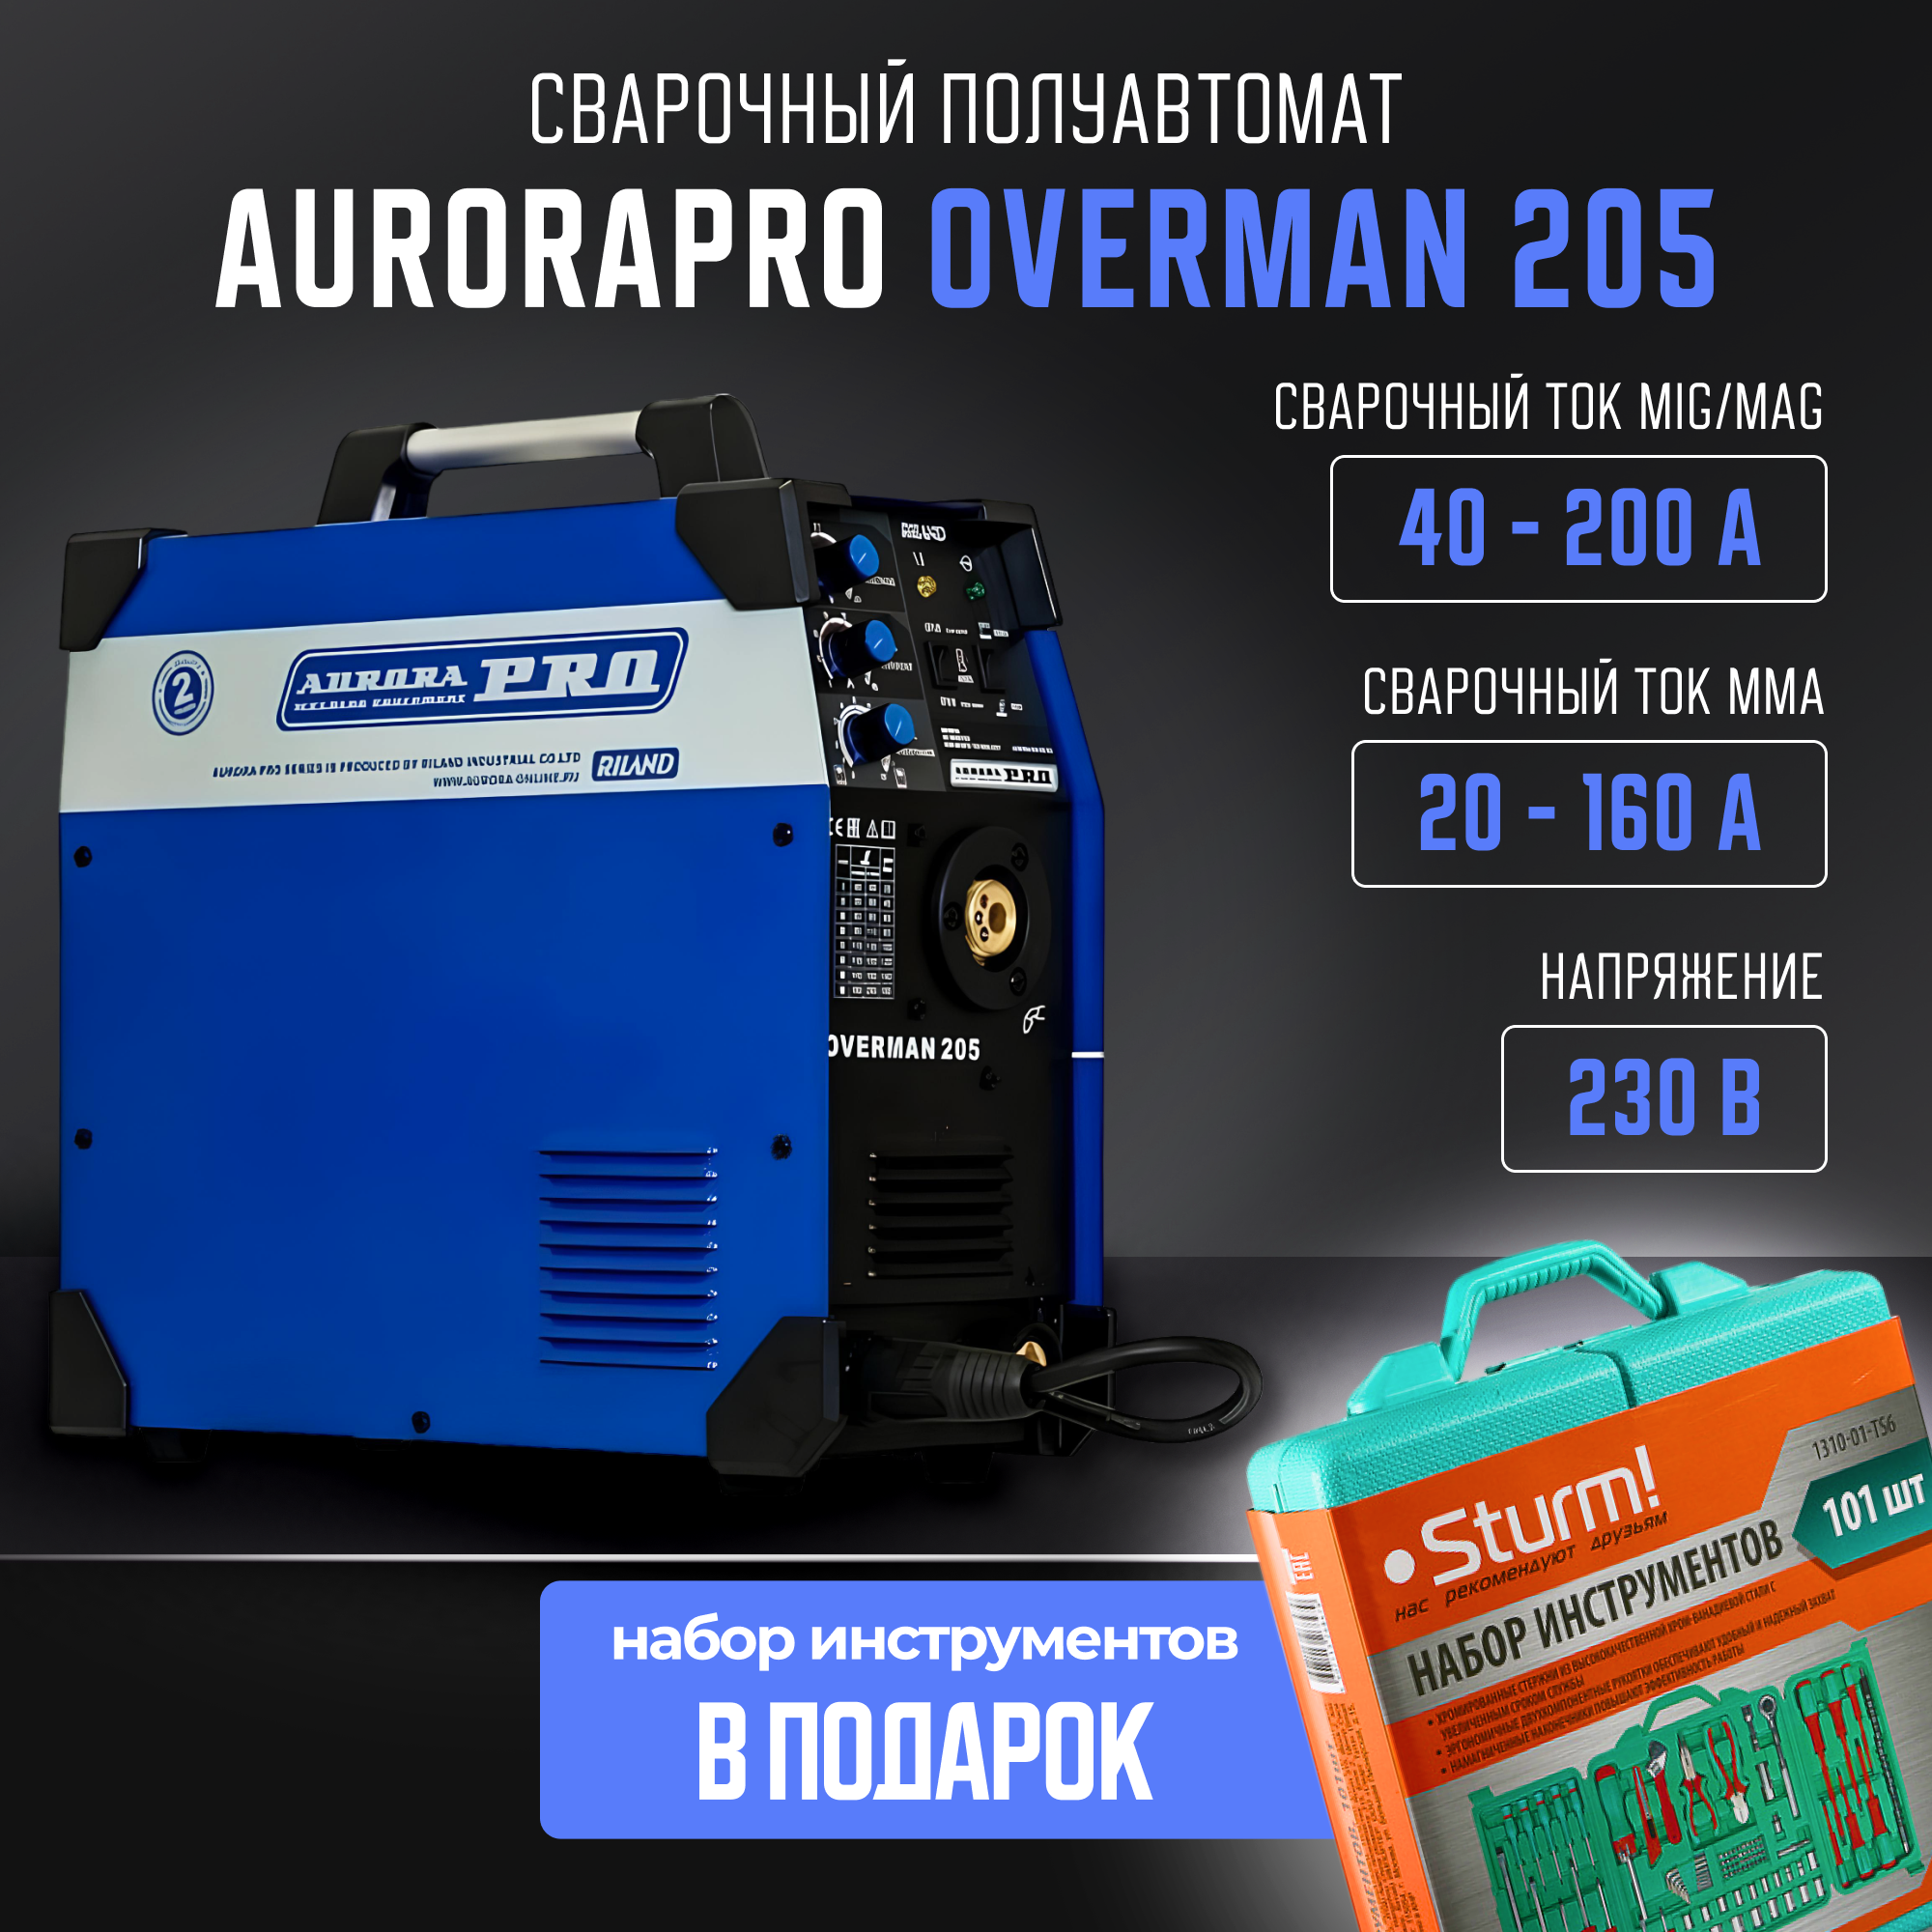 Сварочный полуавтомат Aurora OVERMAN 205 MIG MAG MMA (7226644)+Набор инструментов 101 пр. сварочный полуавтомат aurora overman 200 mosfet перчатки